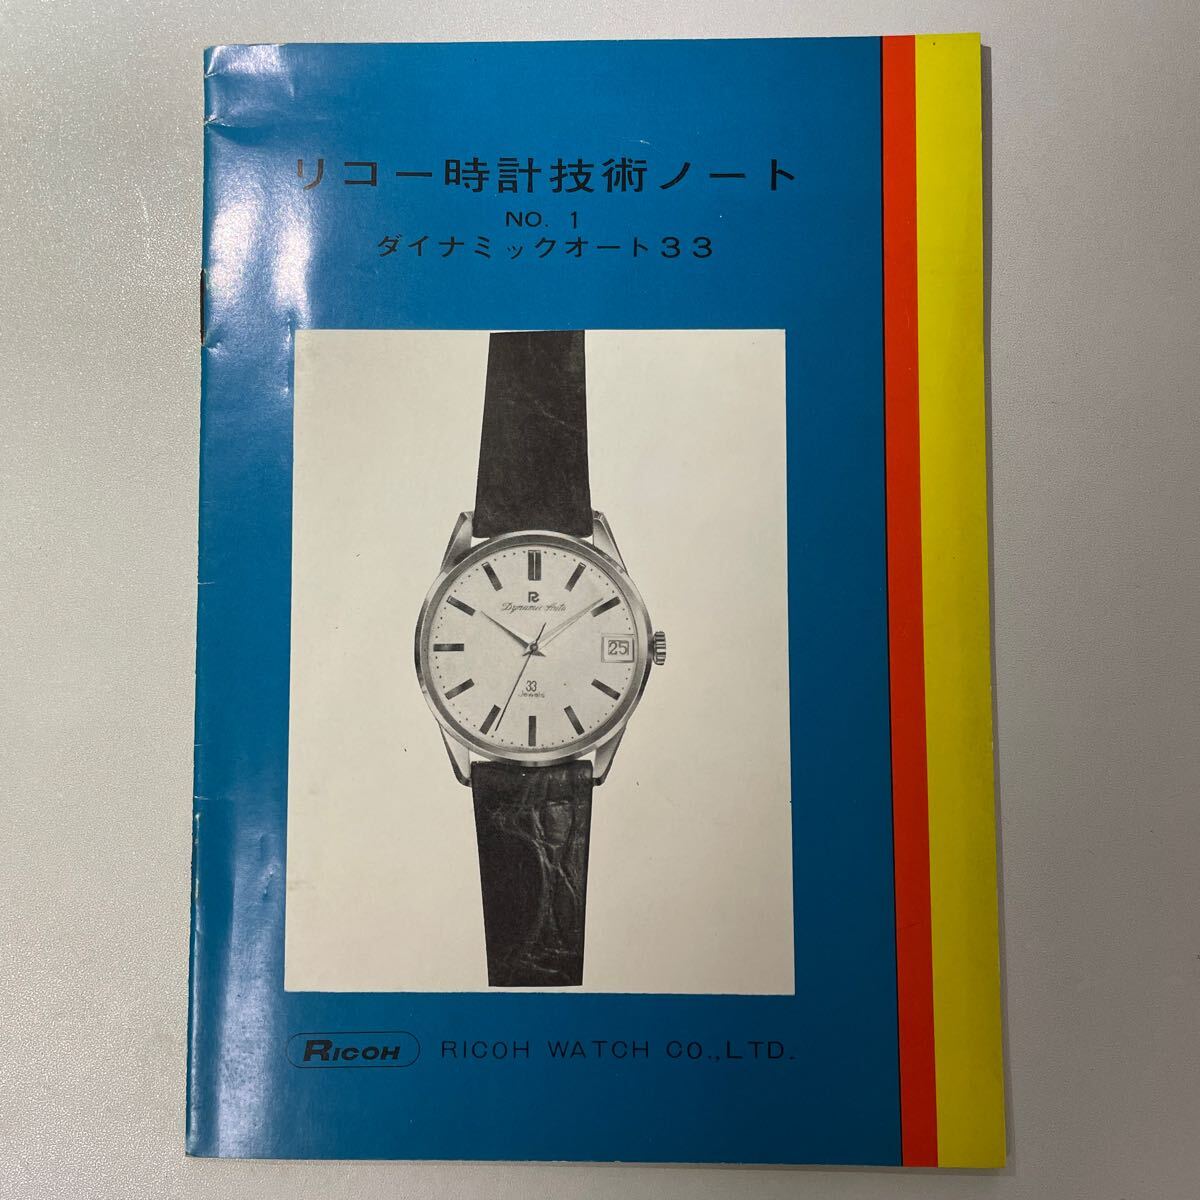 時計資料 貴重資料 リコー ダイナミックオート33 ウォッチカタログ 国産腕時計 の画像1